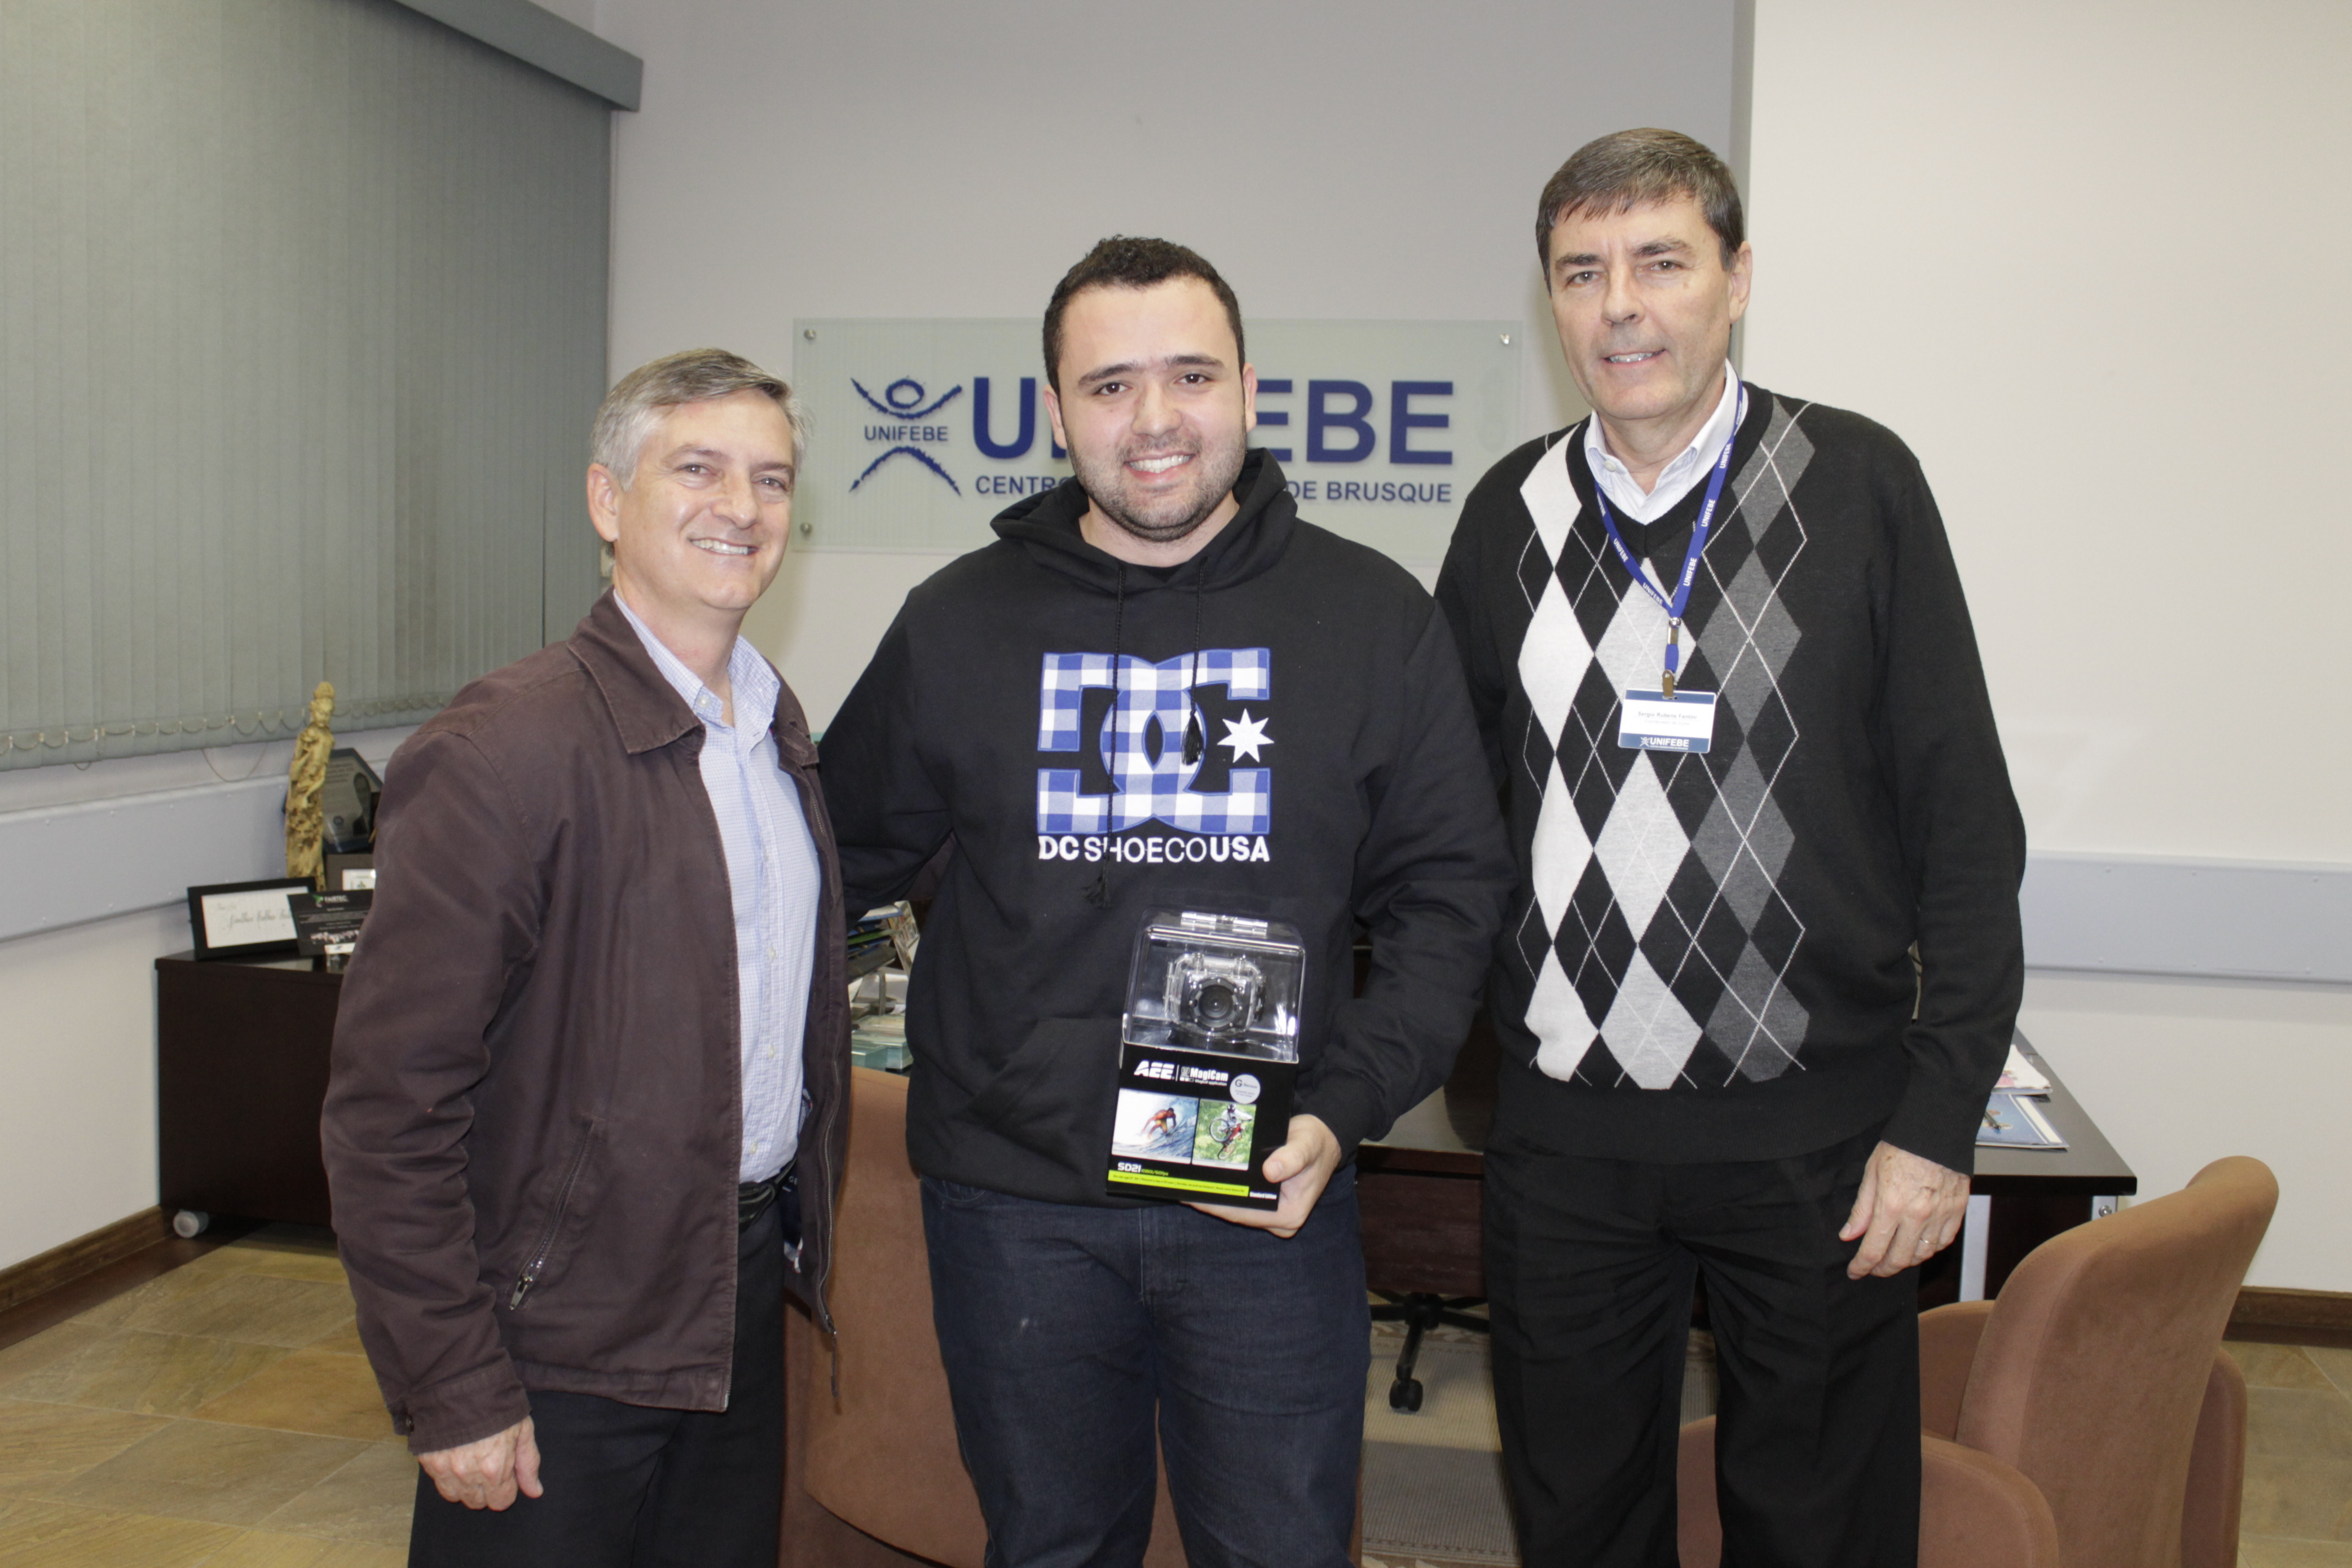 UNIFEBE firma parceria com estudante de Sistemas e doa câmera para drone